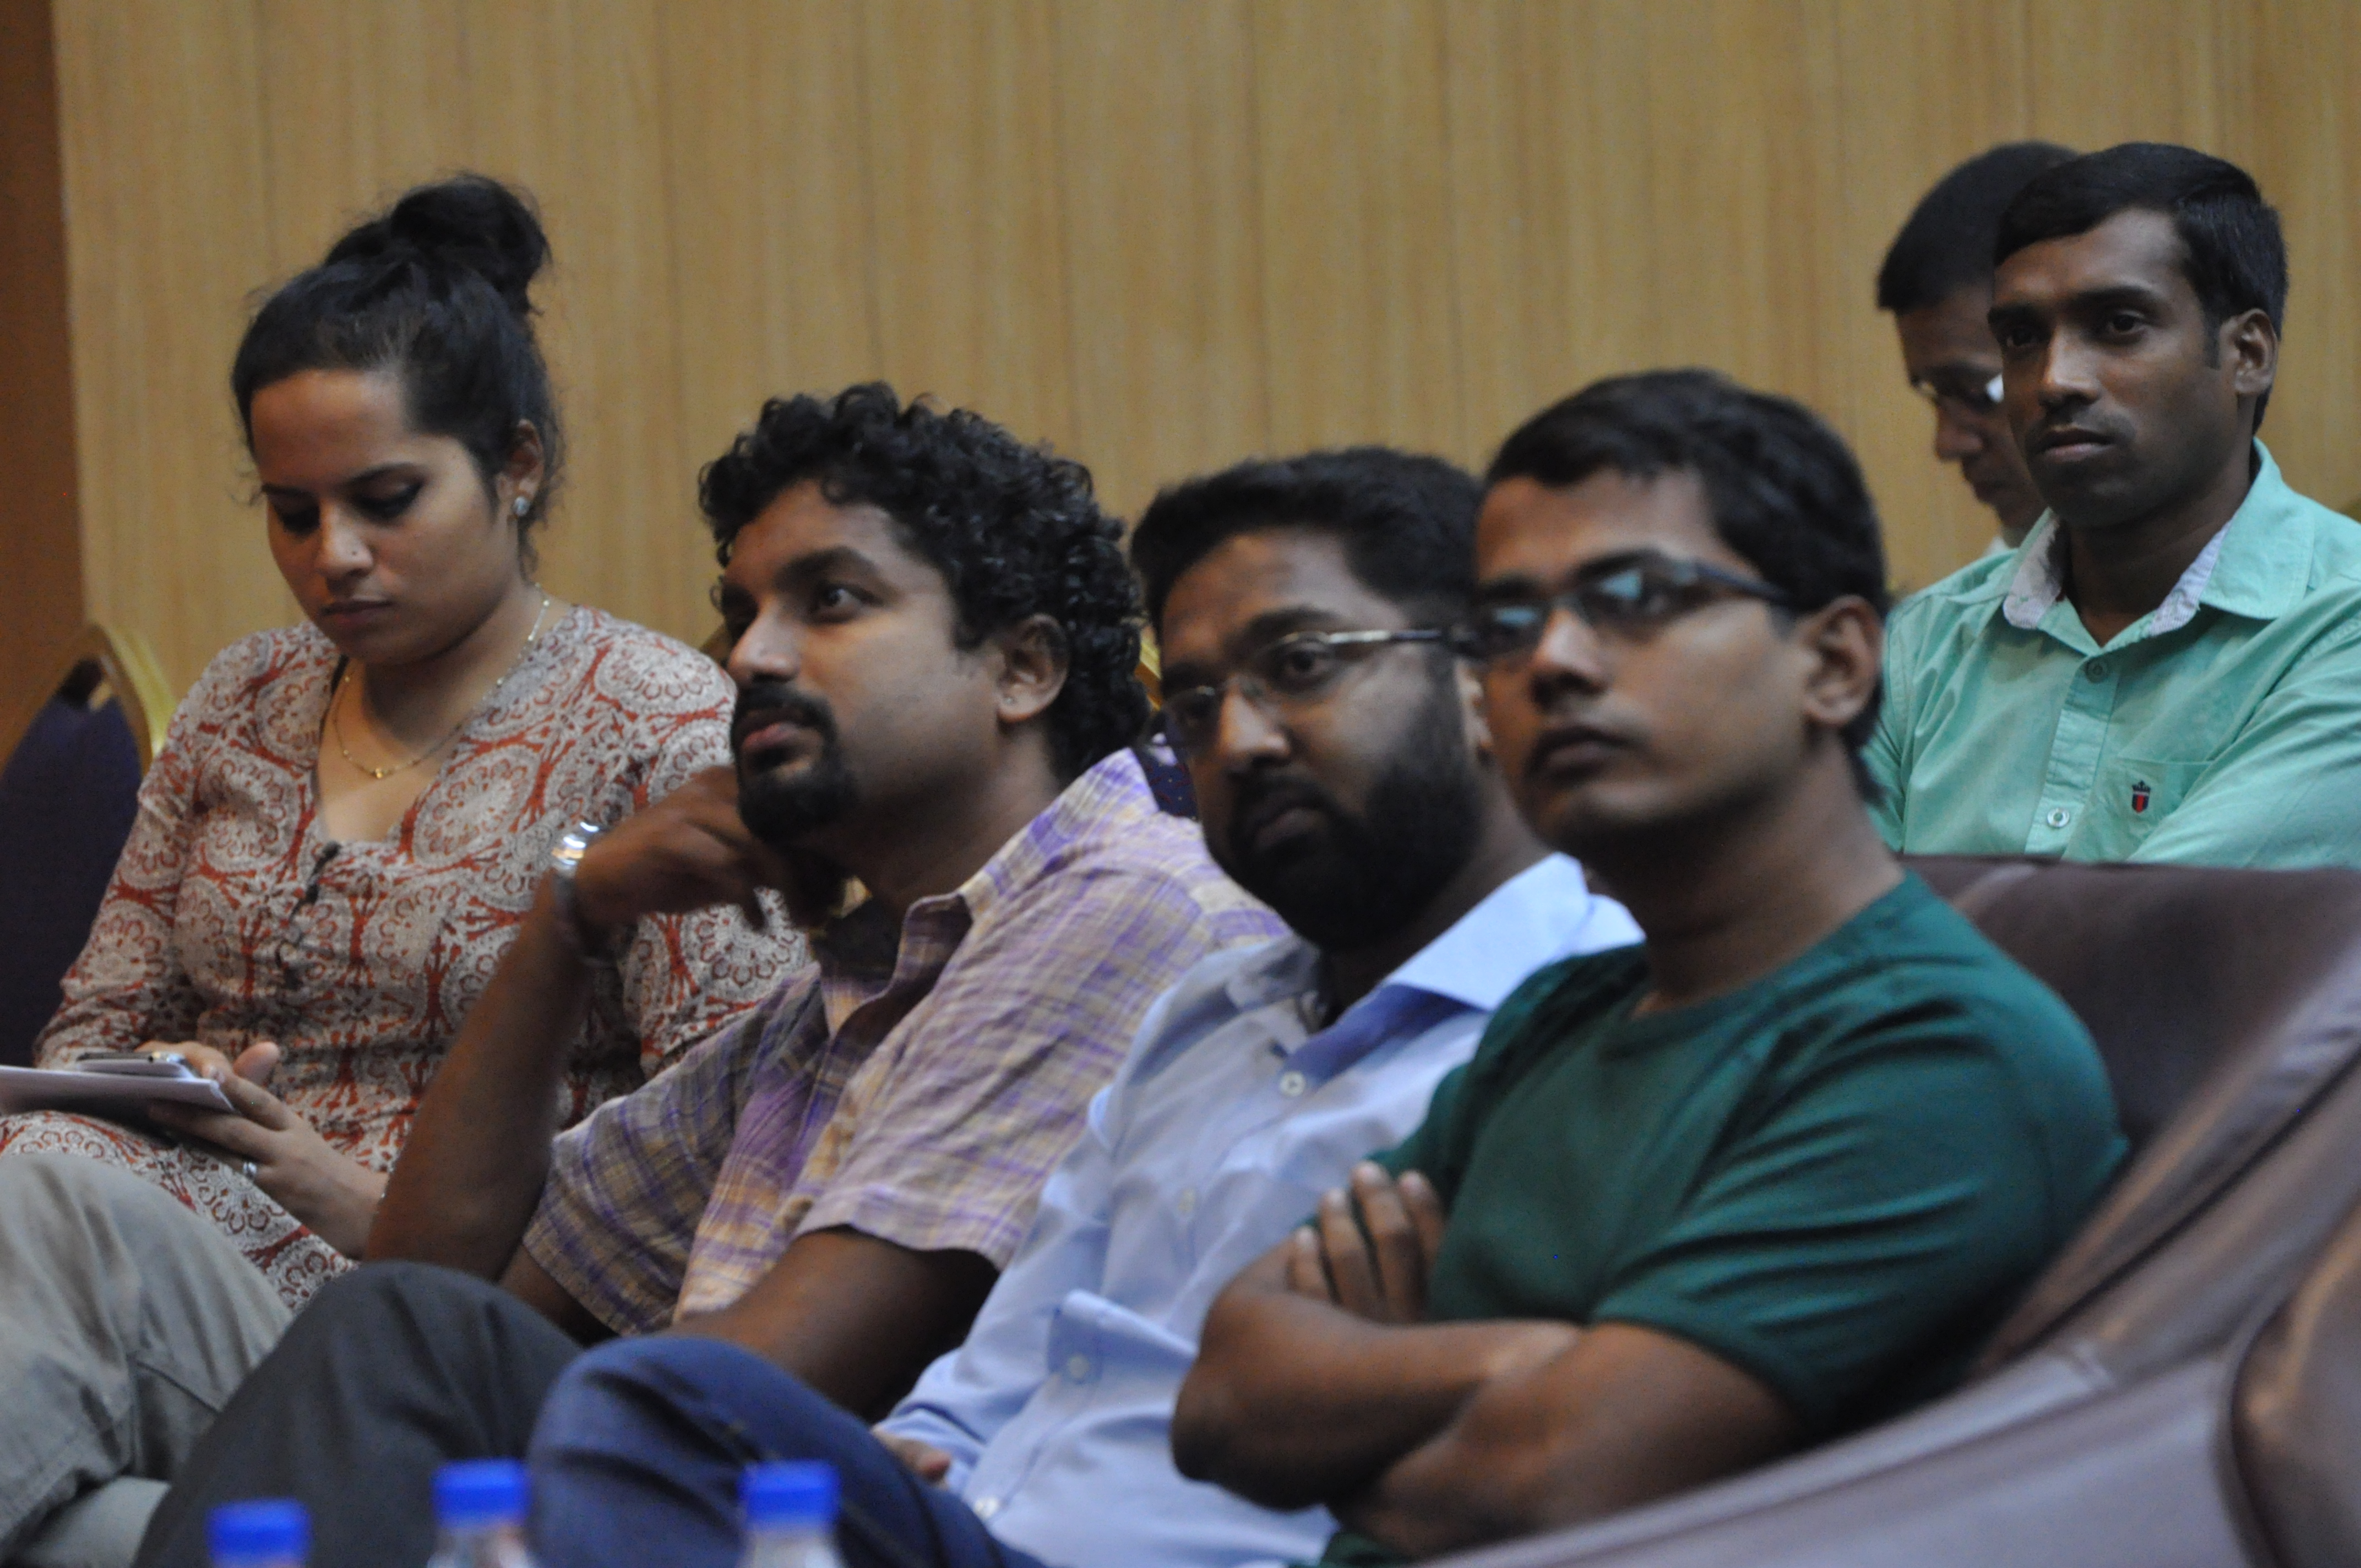 Seminar on “Thinking Social” at SIMC Pune – 3 October 2015